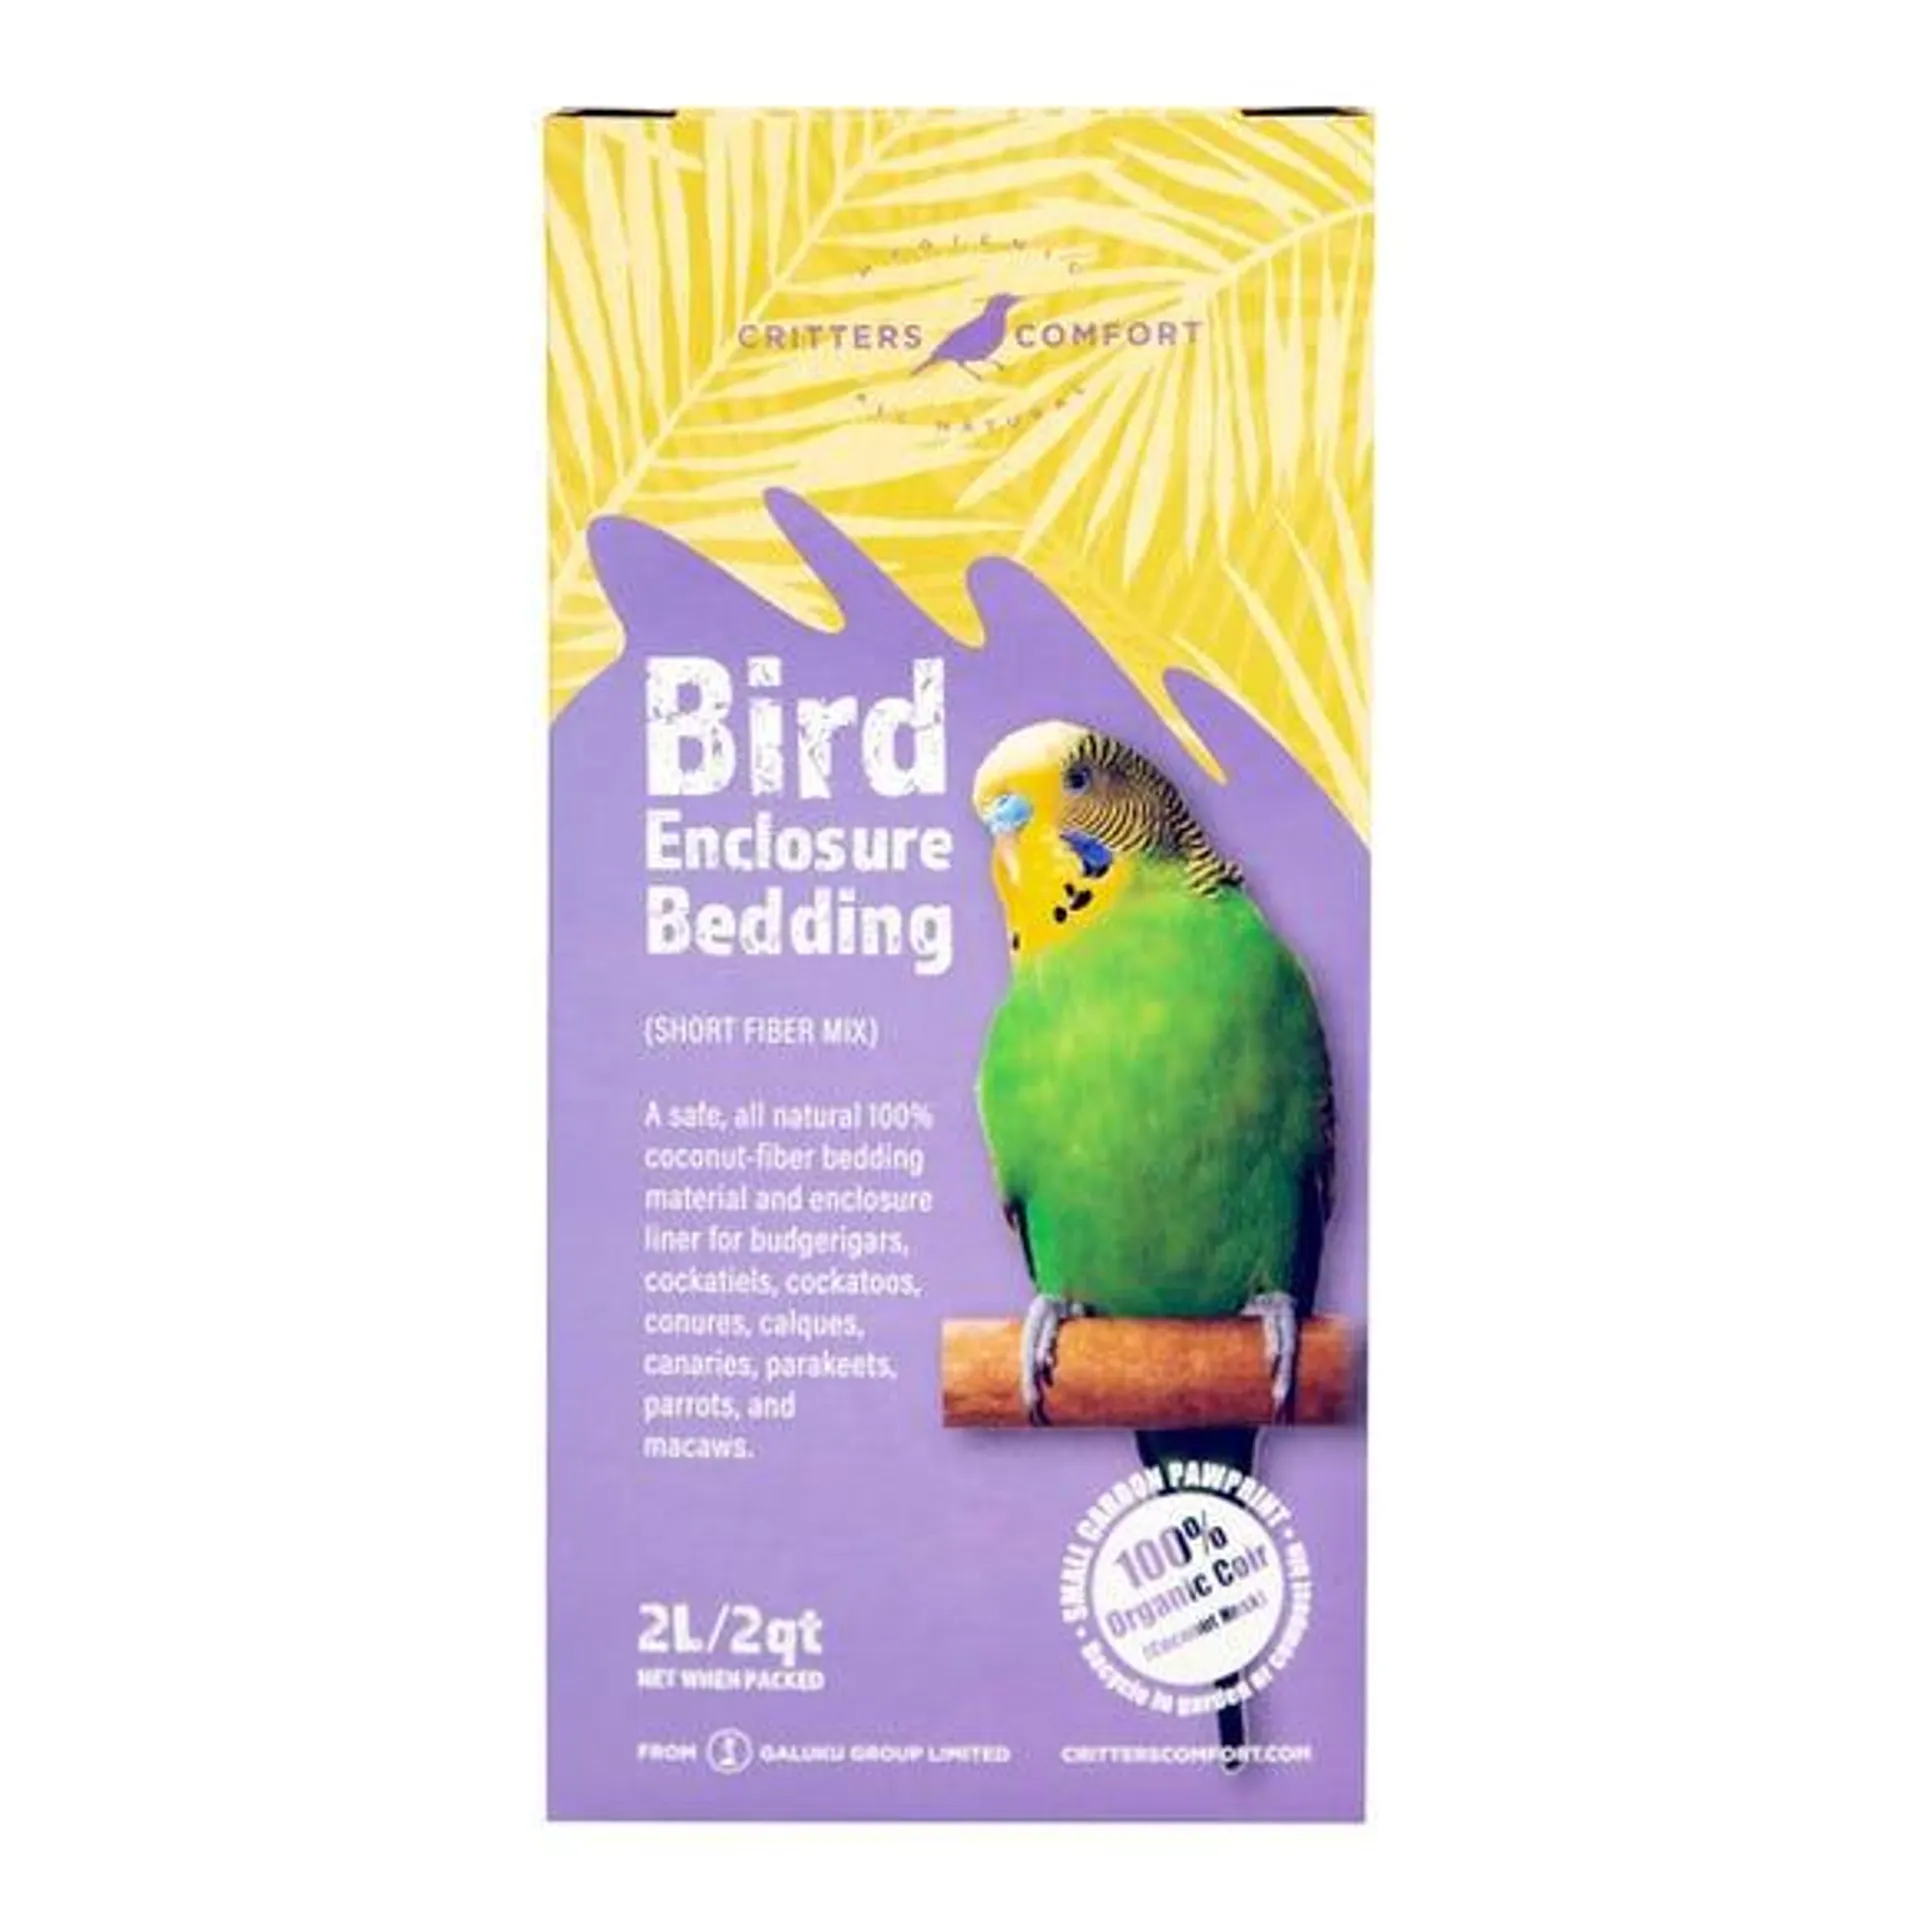 Critters Comfort Bird Enclosure Bedding 2L